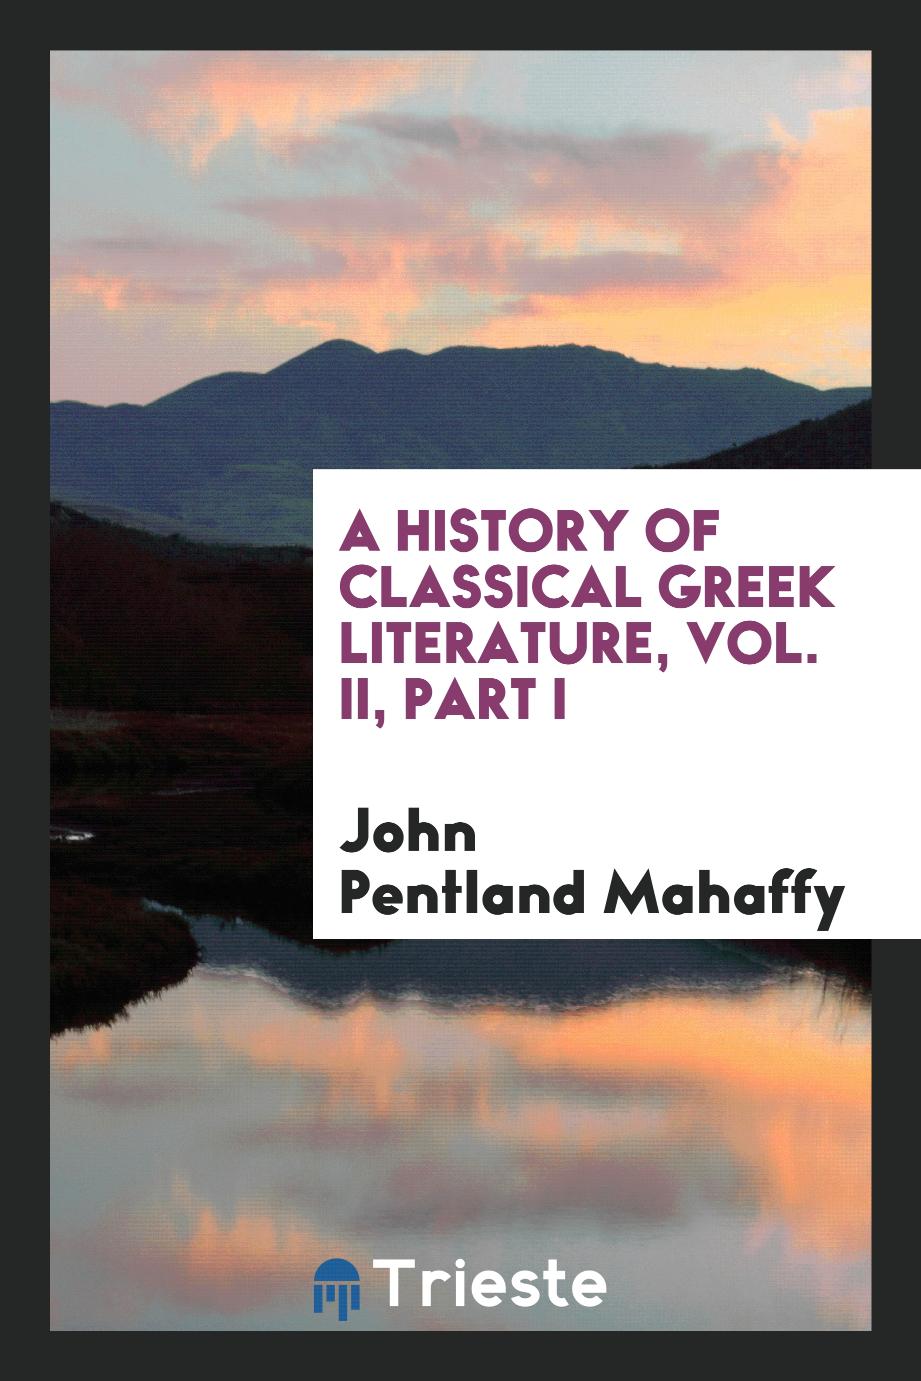 A history of classical Greek literature, Vol. II, Part I